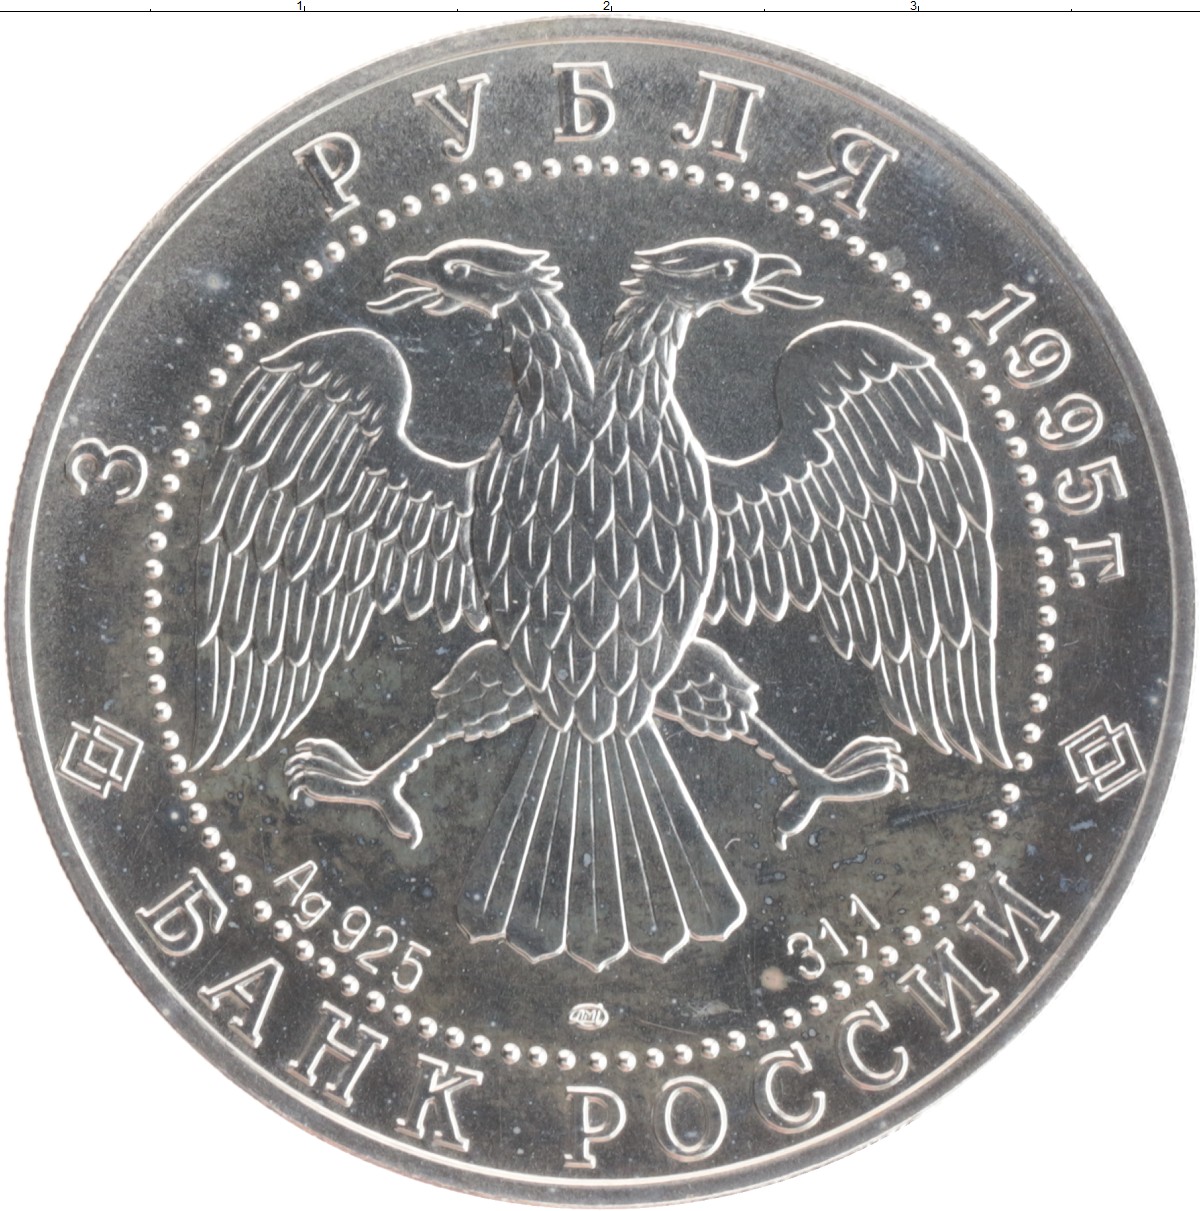 5 рублей серебряные. 3 Рубля серебро. Серебрянный 3 рубль 1995год. 3 Рубля серебряные 1995 год. Россия 3 рубля 1995.